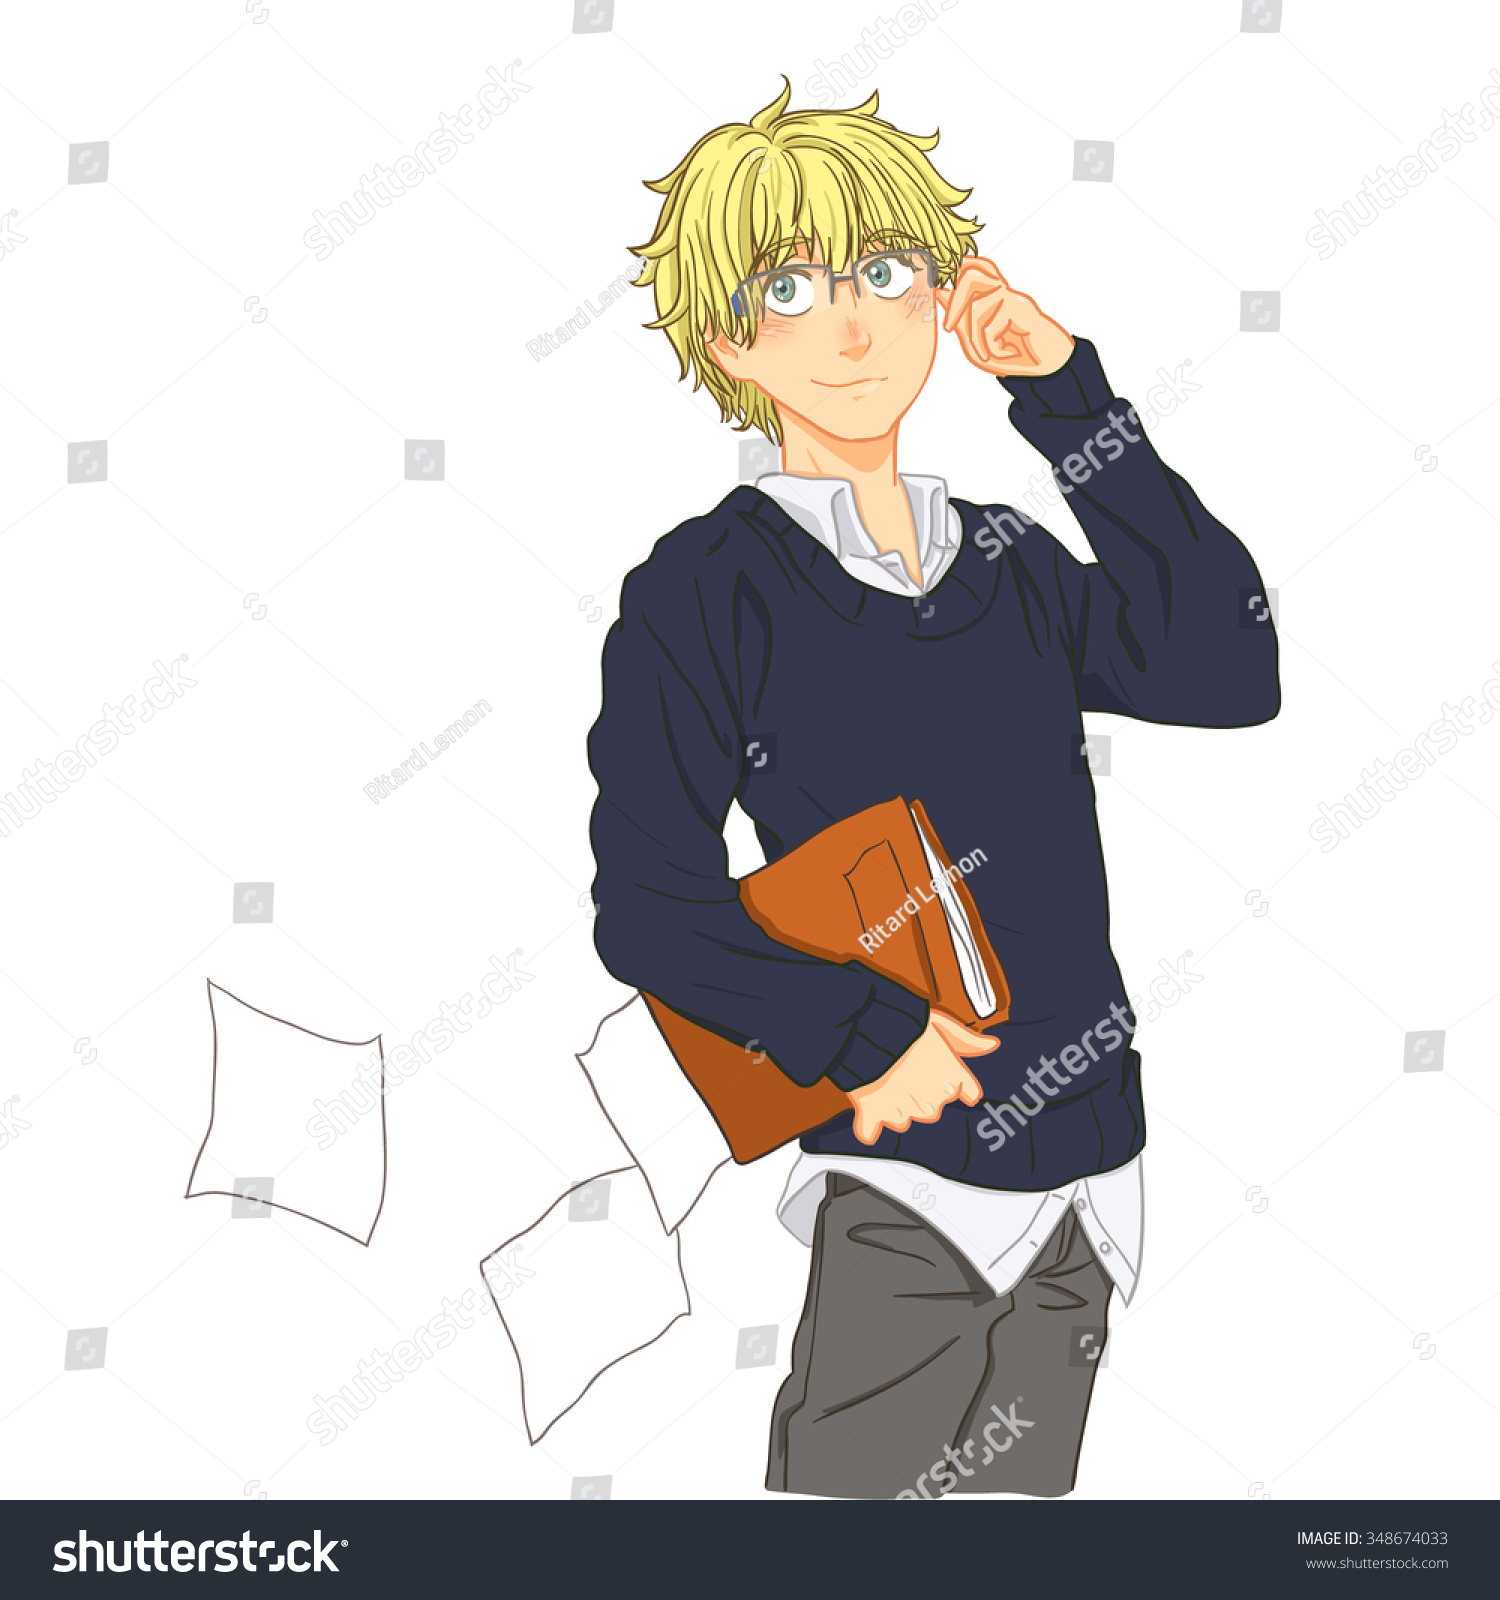 Cute Cartoon Boy Blond Hair Wearing People Business Finance